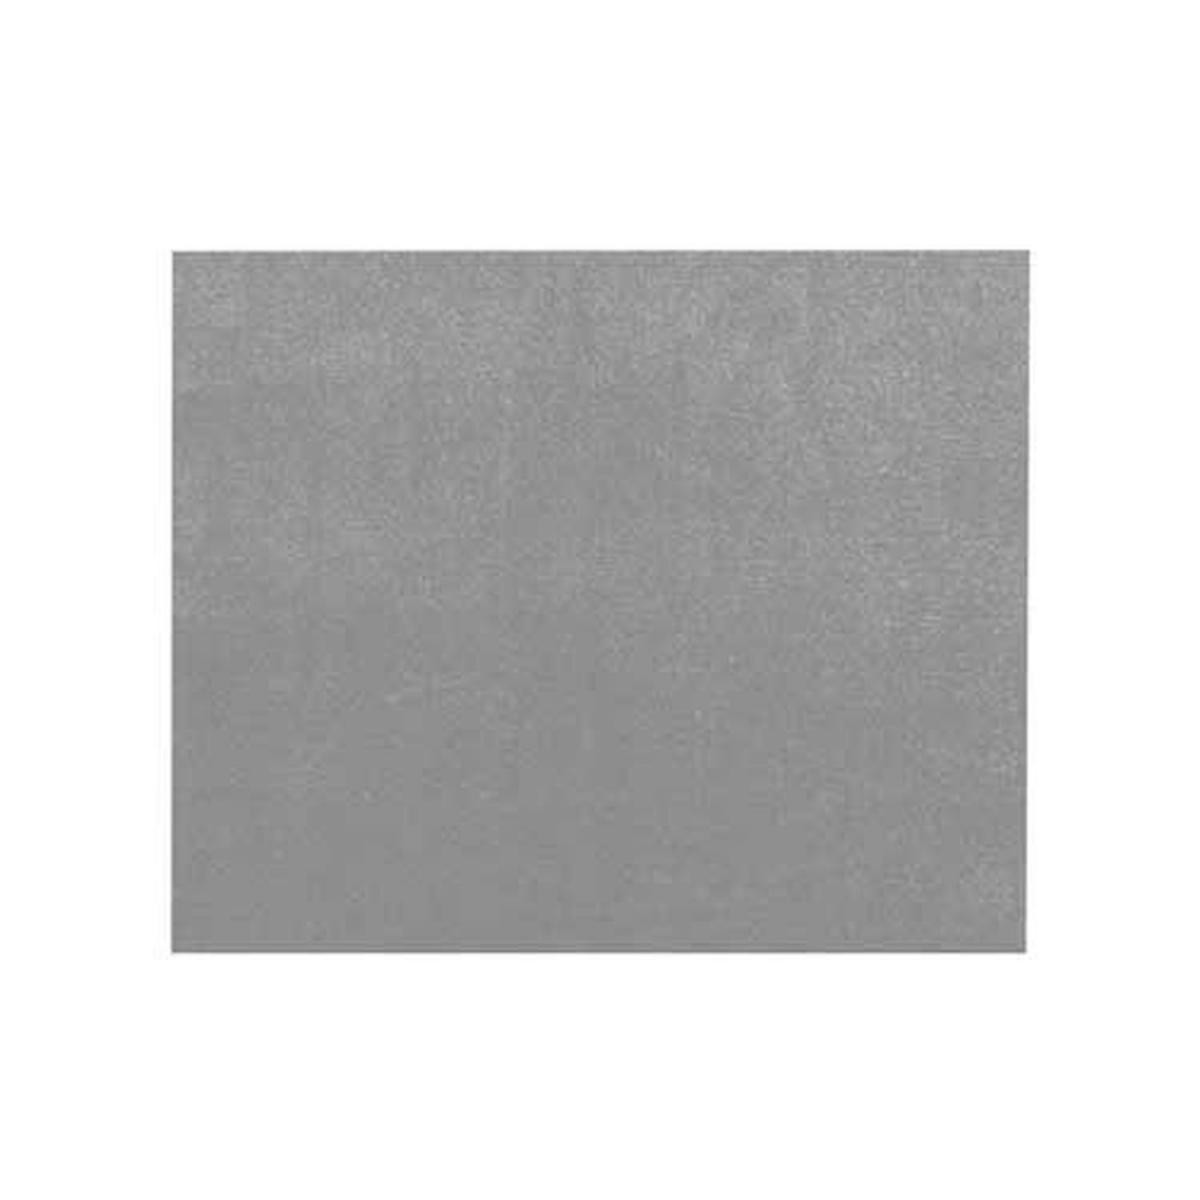 Sudtrading - Adhésif décoratif Aspect velours gris - 150 x 45cm - Papier peint